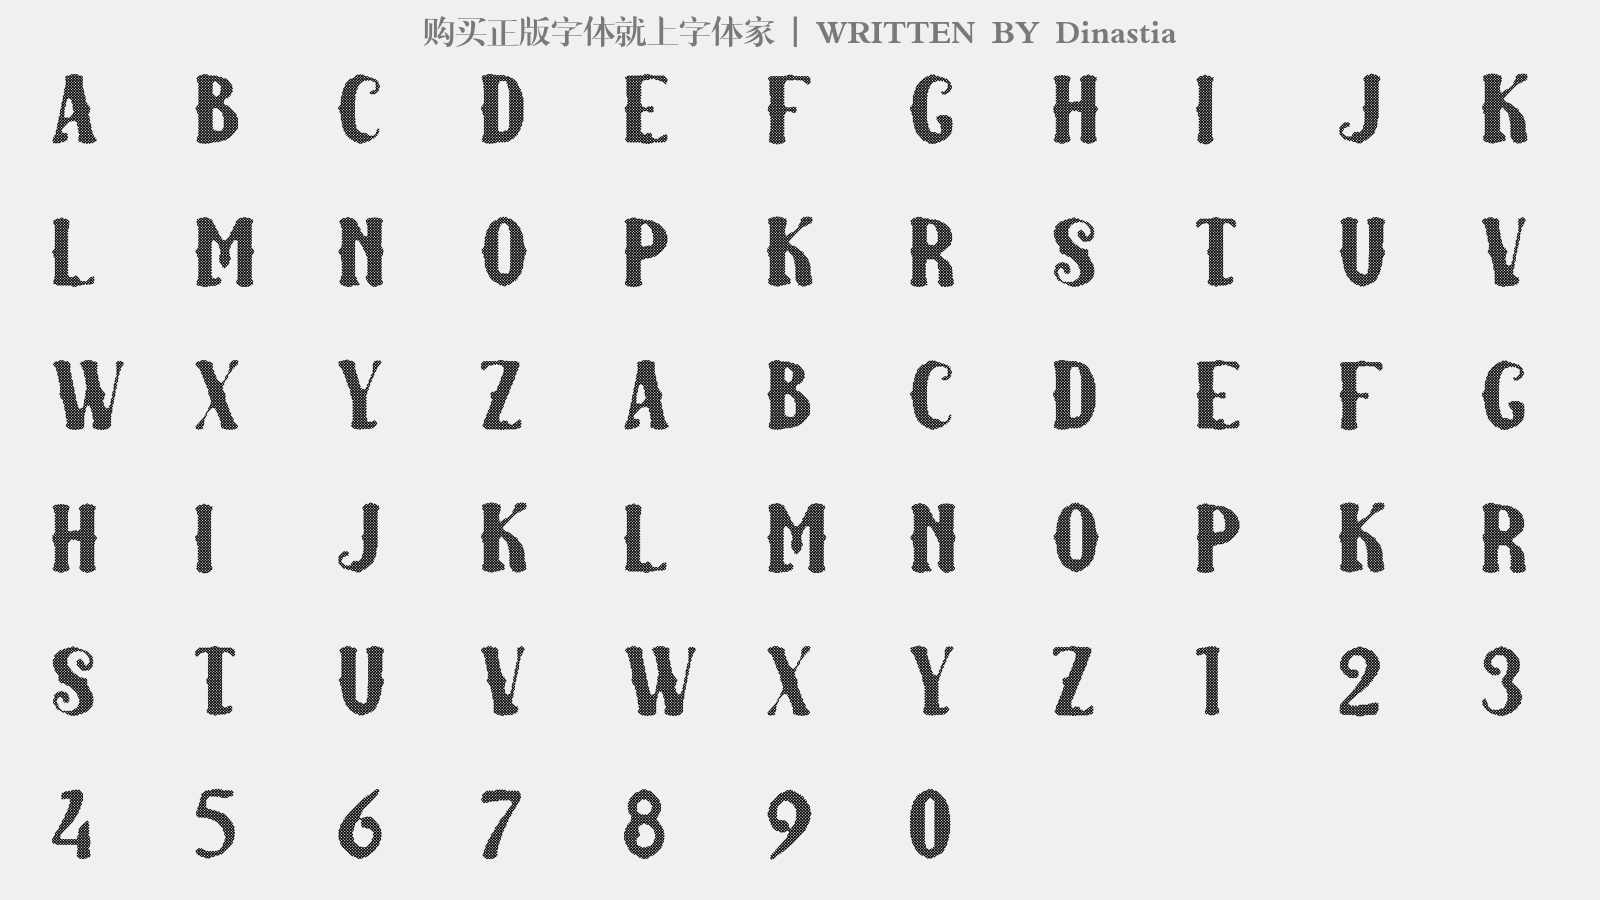 Dinastia - 大写字母/小写字母/数字